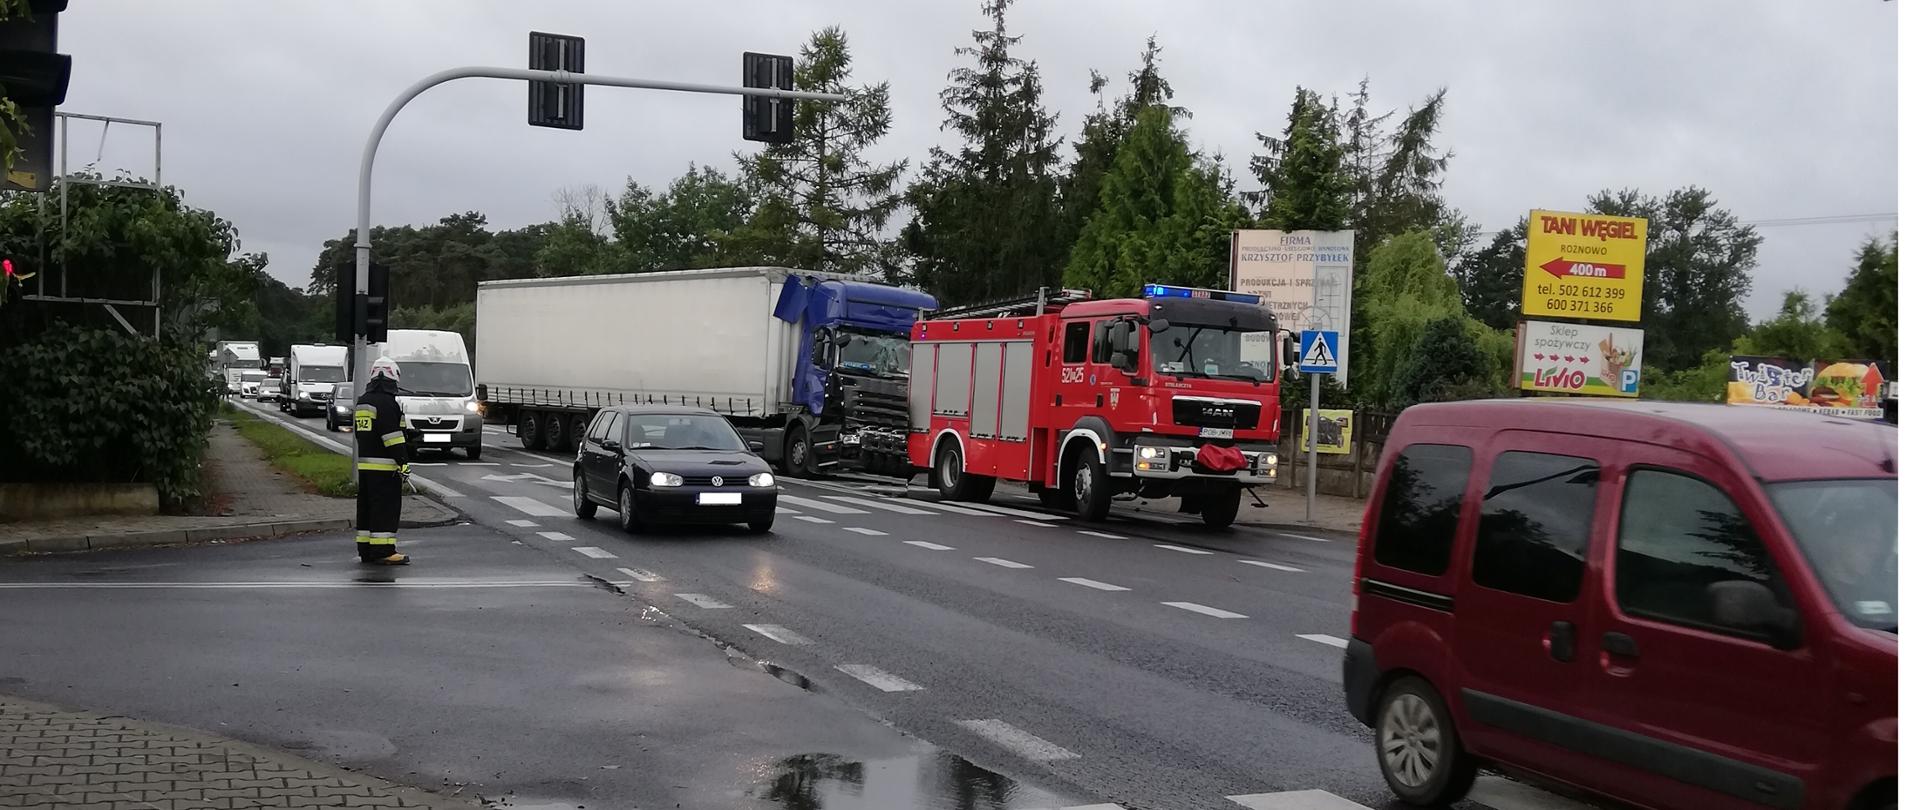 na skrzyżowaniu strażak kieruje ruchem na poboczu stoi rozbita ciężarówka i pojazd ratowniczo - gaśniczy 